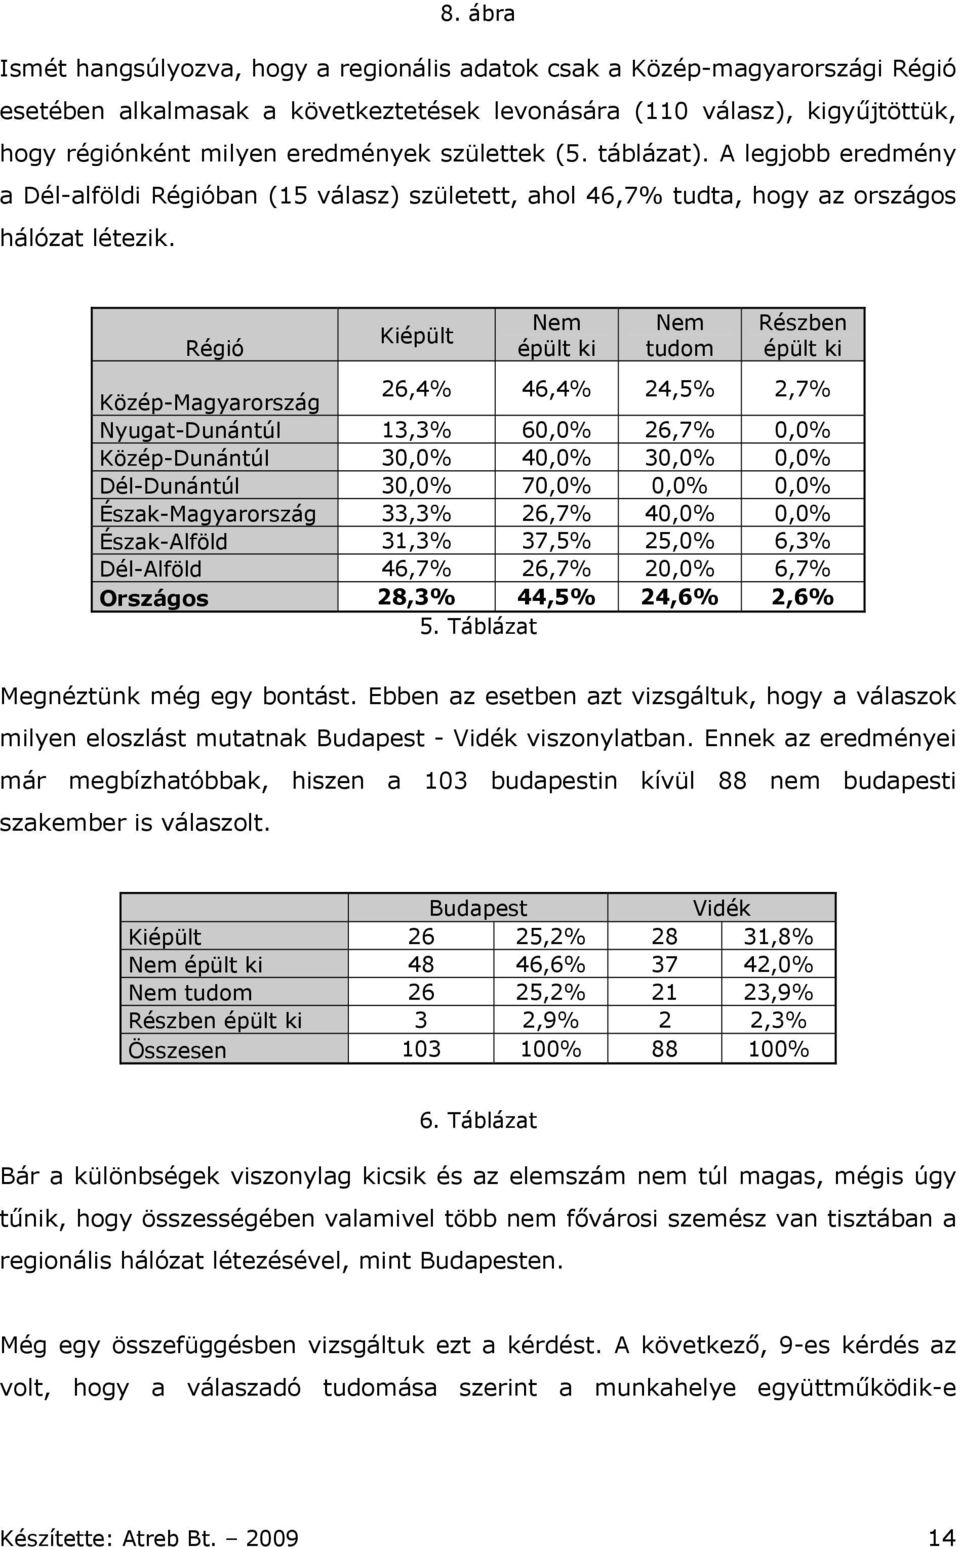 Régió Kiépült Nem épült ki Nem tudom Részben épült ki Közép-Magyarország 26,4% 46,4% 24,5% 2,7% Nyugat-Dunántúl 13,3% 60,0% 26,7% 0,0% Közép-Dunántúl 30,0% 40,0% 30,0% 0,0% Dél-Dunántúl 30,0% 70,0%